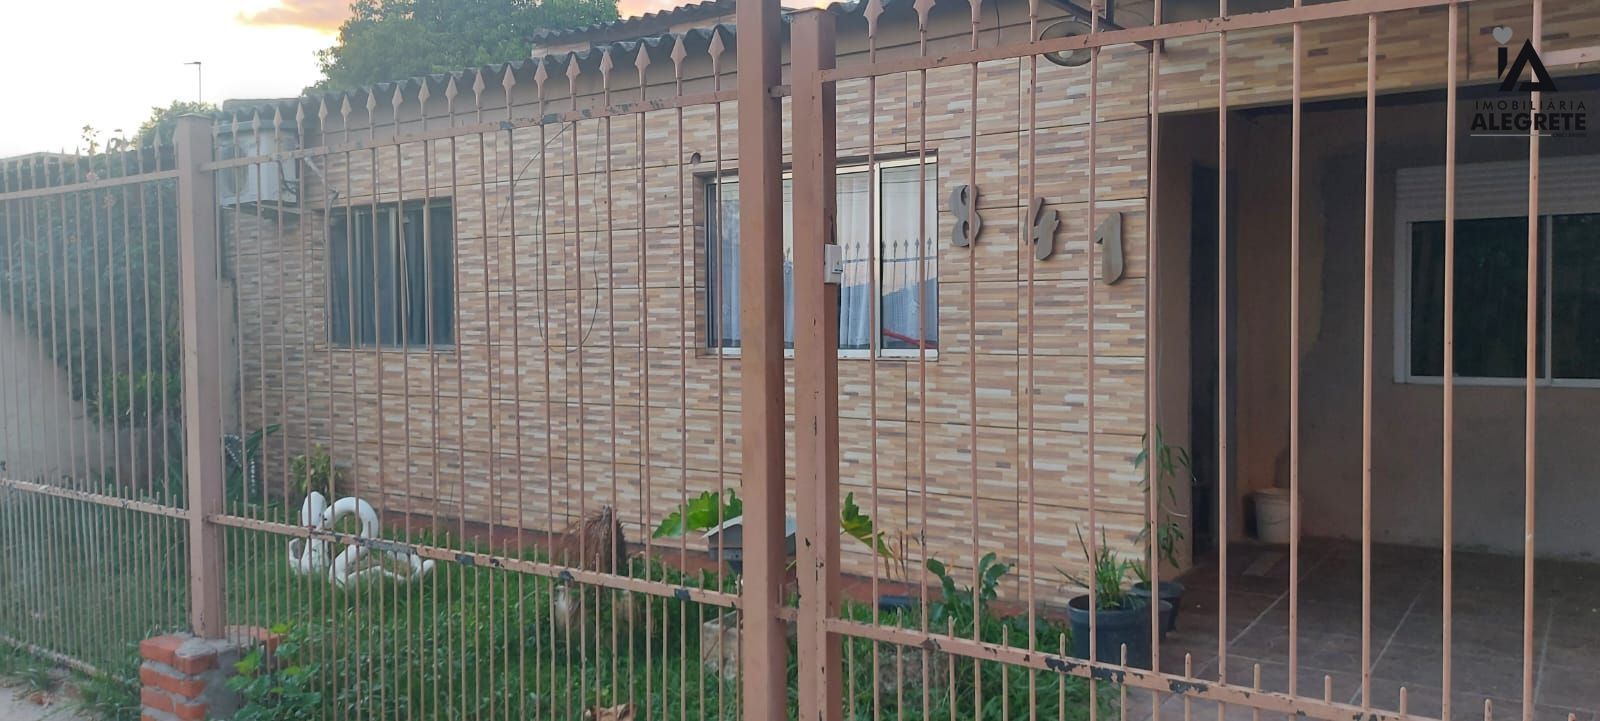 Casa  venda  no Capo do Angico - Alegrete, RS. Imveis